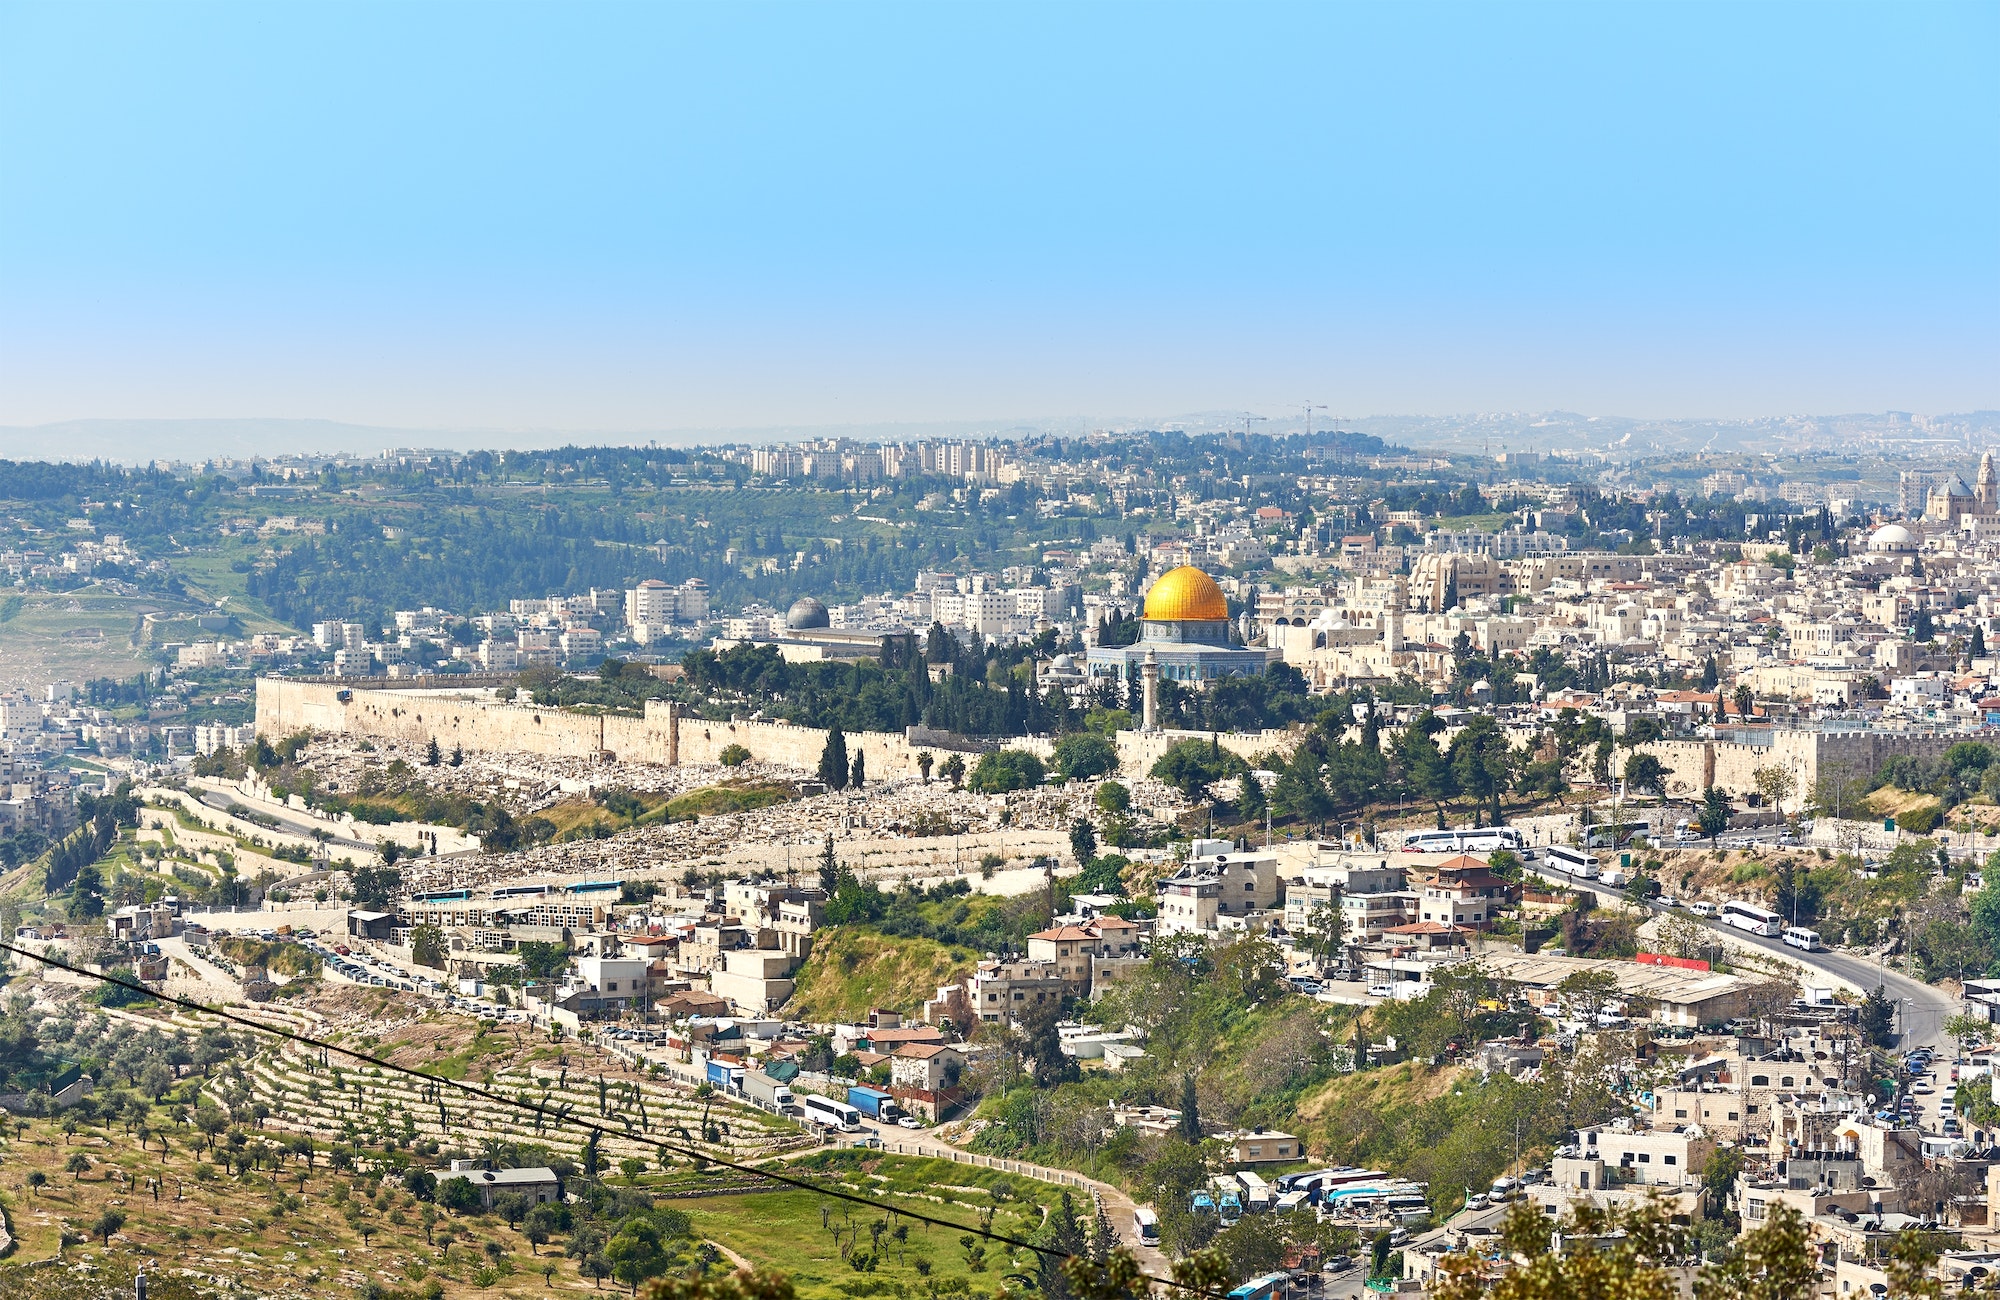 Jerusalem panoramic view